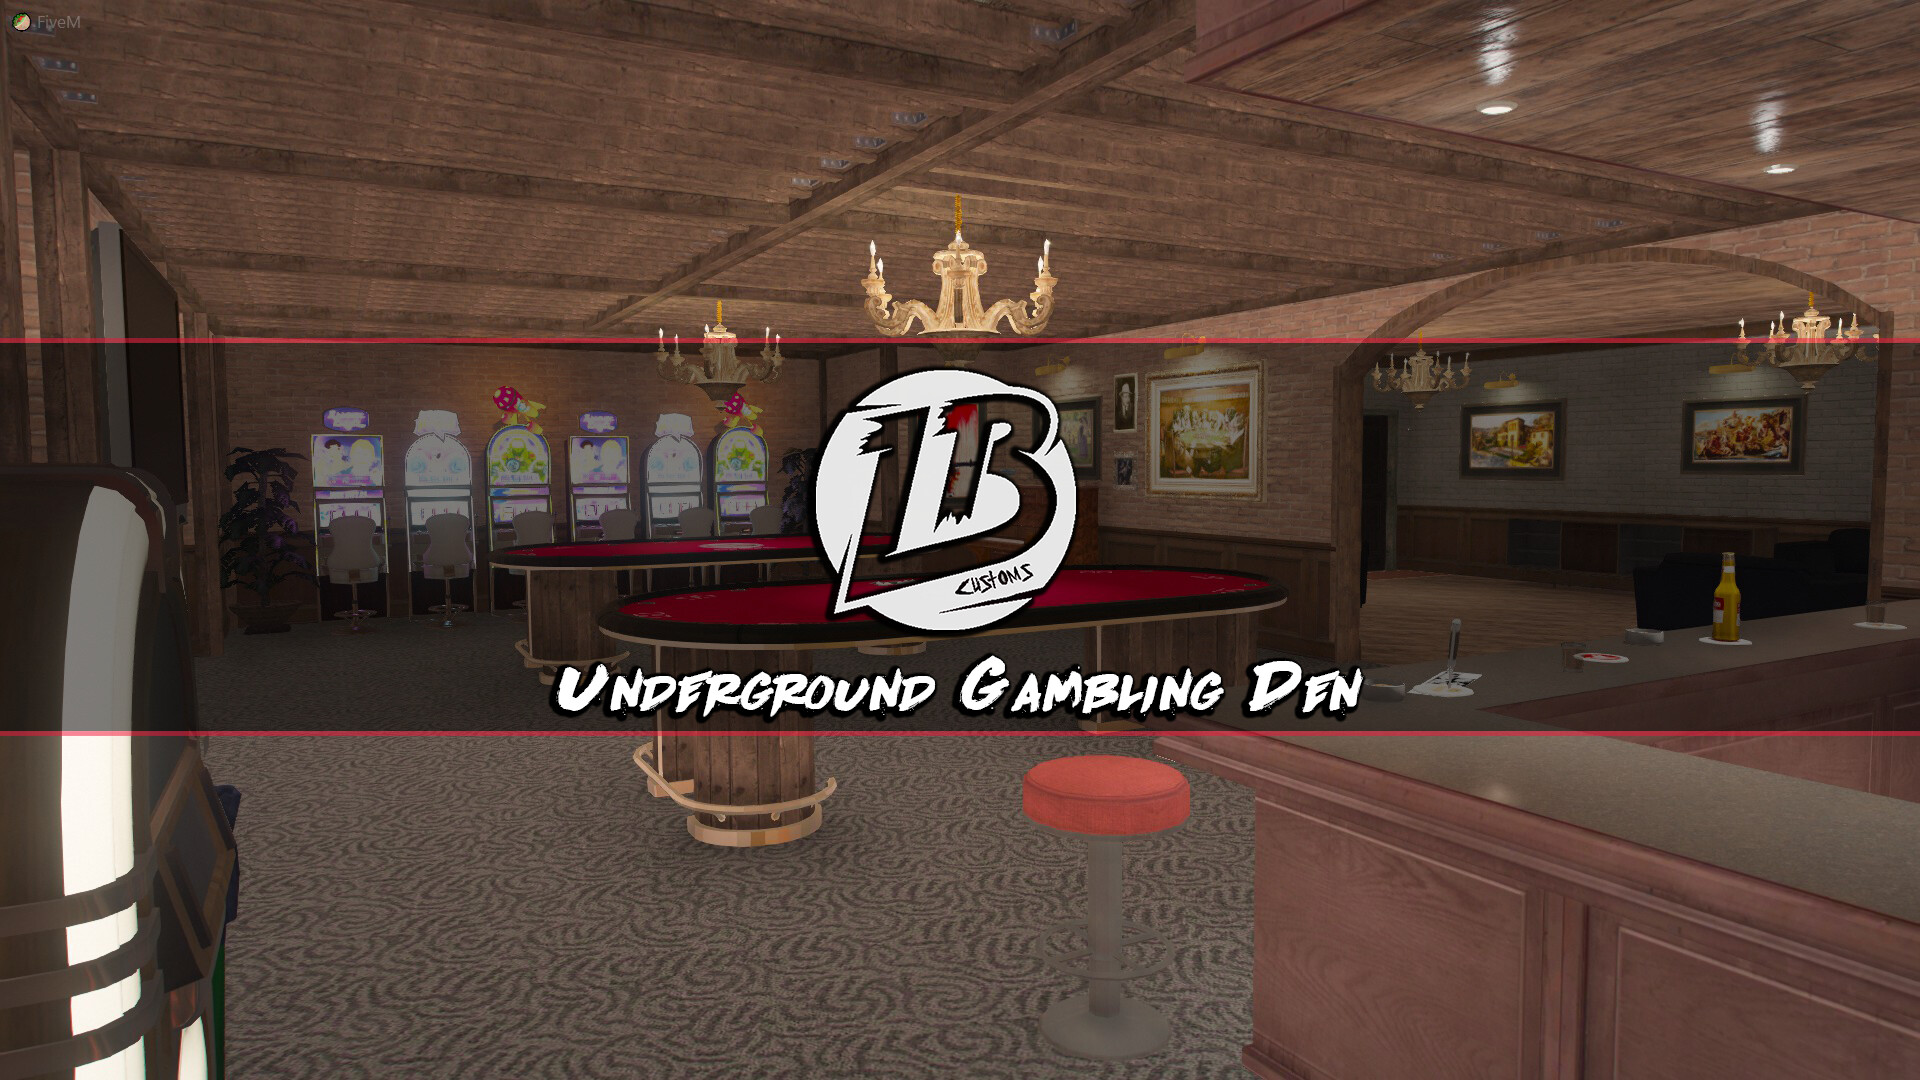 MLO Interior] Underground Gambling Den [Paid] - Releases - Cfx.re